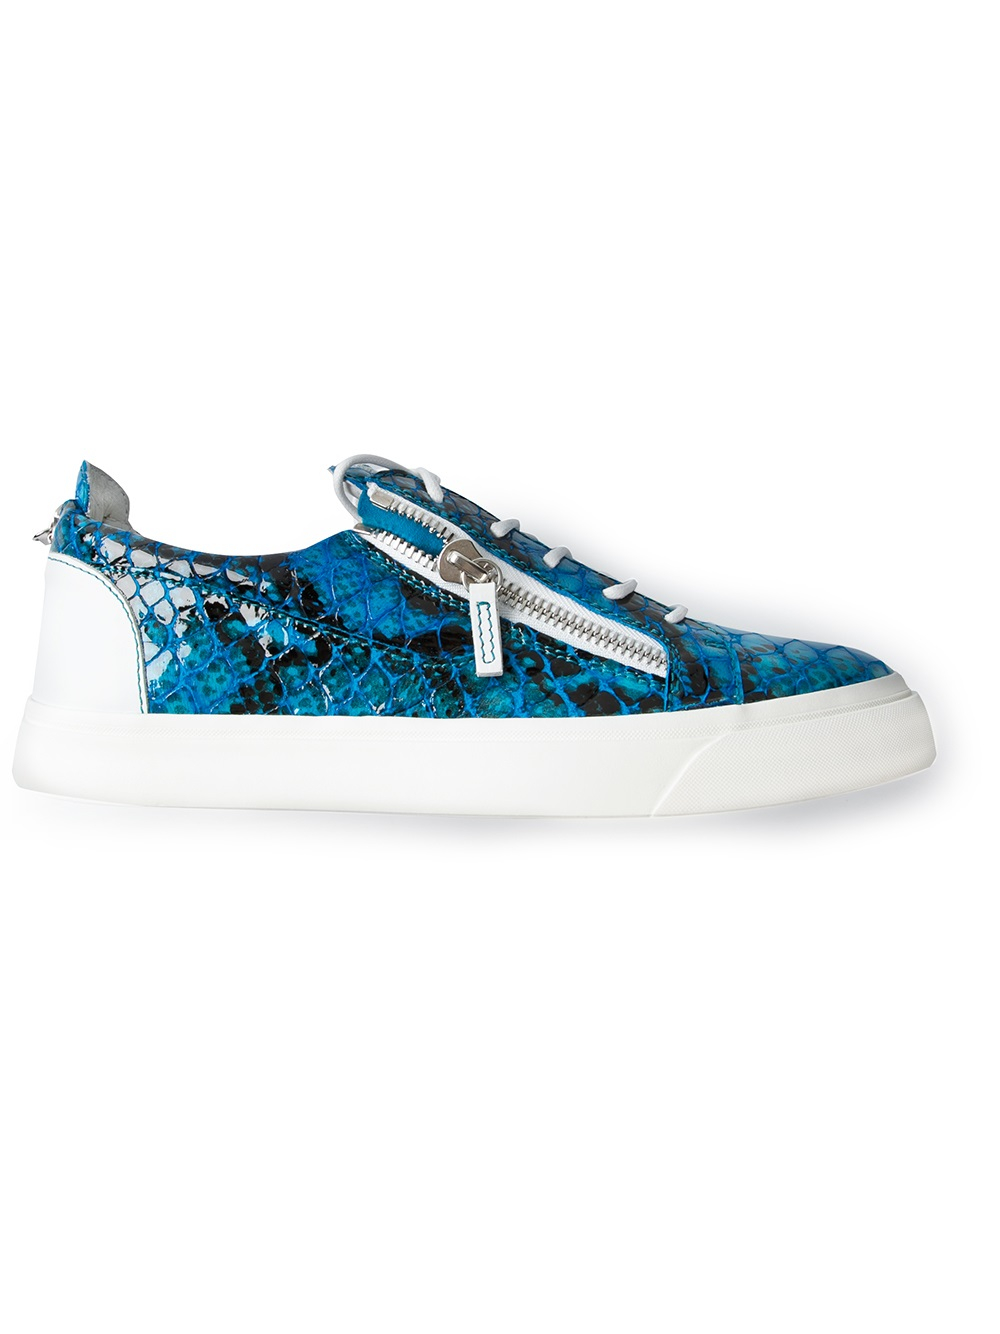 Giuseppe Zanotti Crocodile Effect Sneaker in Blue for Men - Lyst